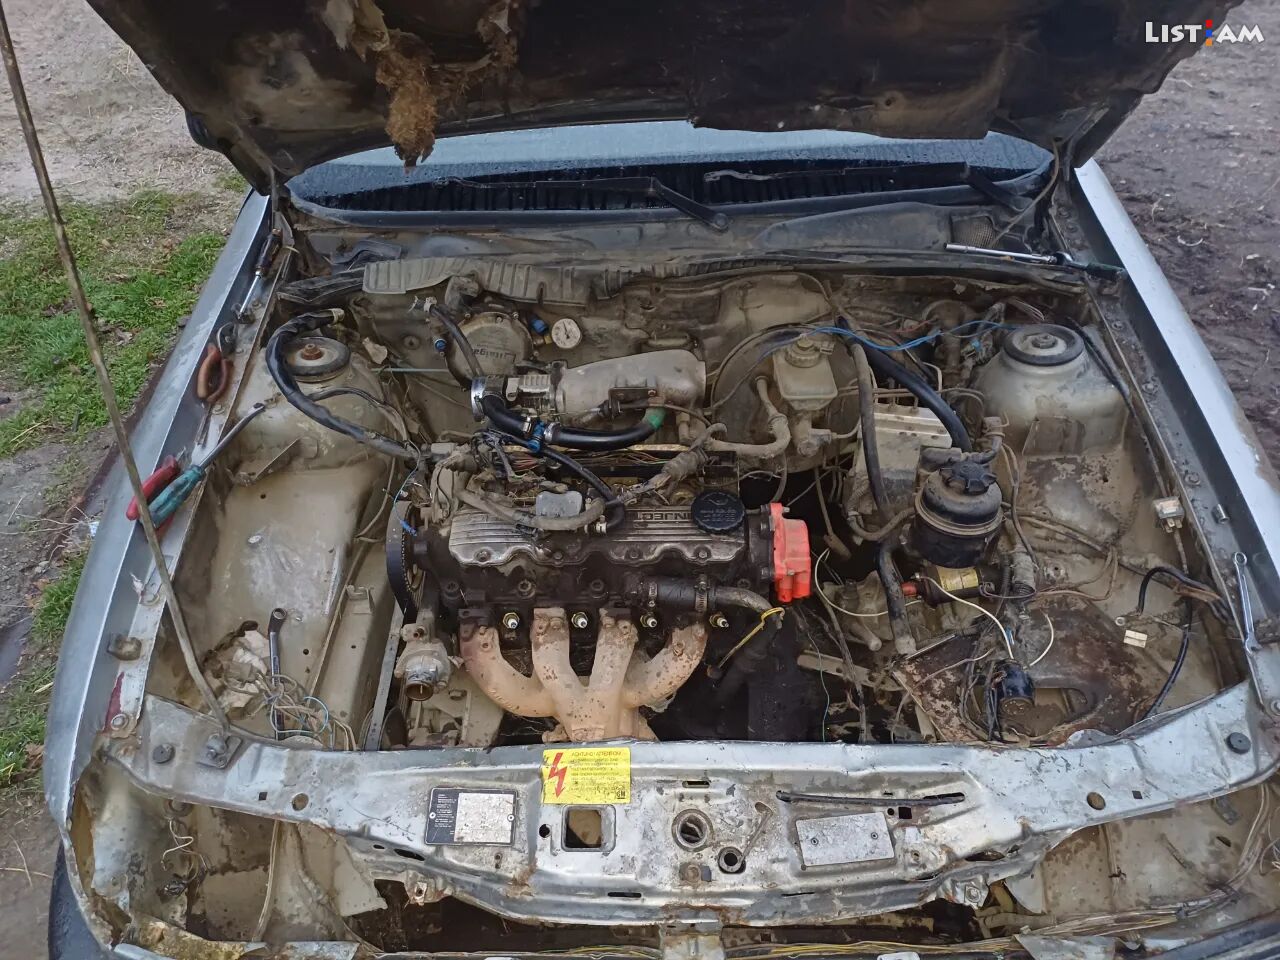 Opel Vectra, 1993